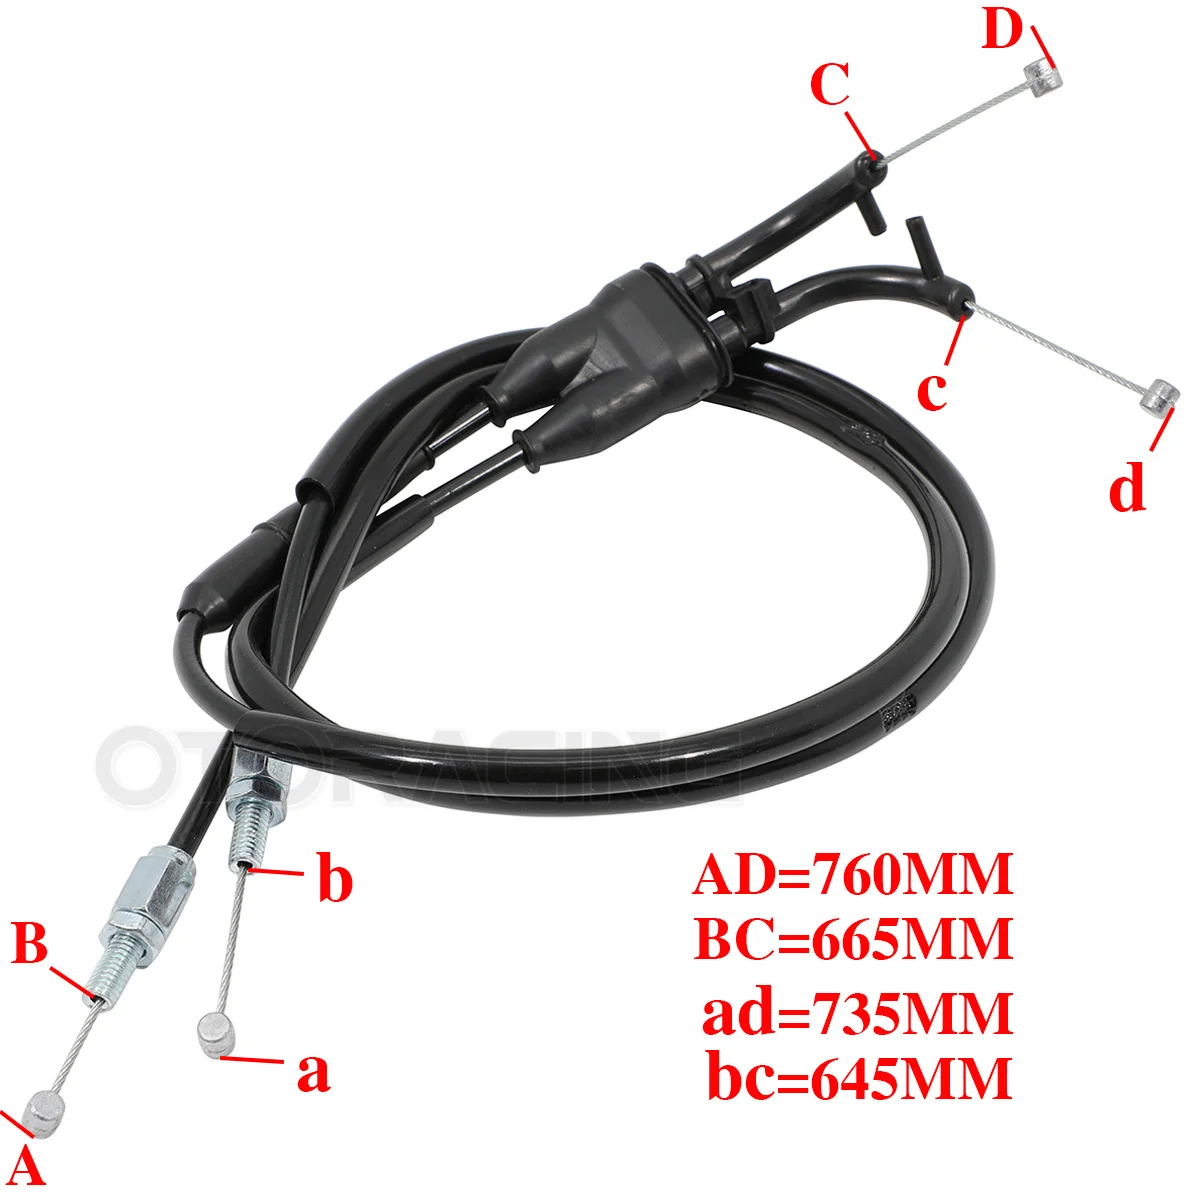 Cable de acelerador para motocicleta, accesorio para Yamaha YZF R1, YZF-R1, YZFR1, 2009, 2010, 2011, 2012, 2013, 2014